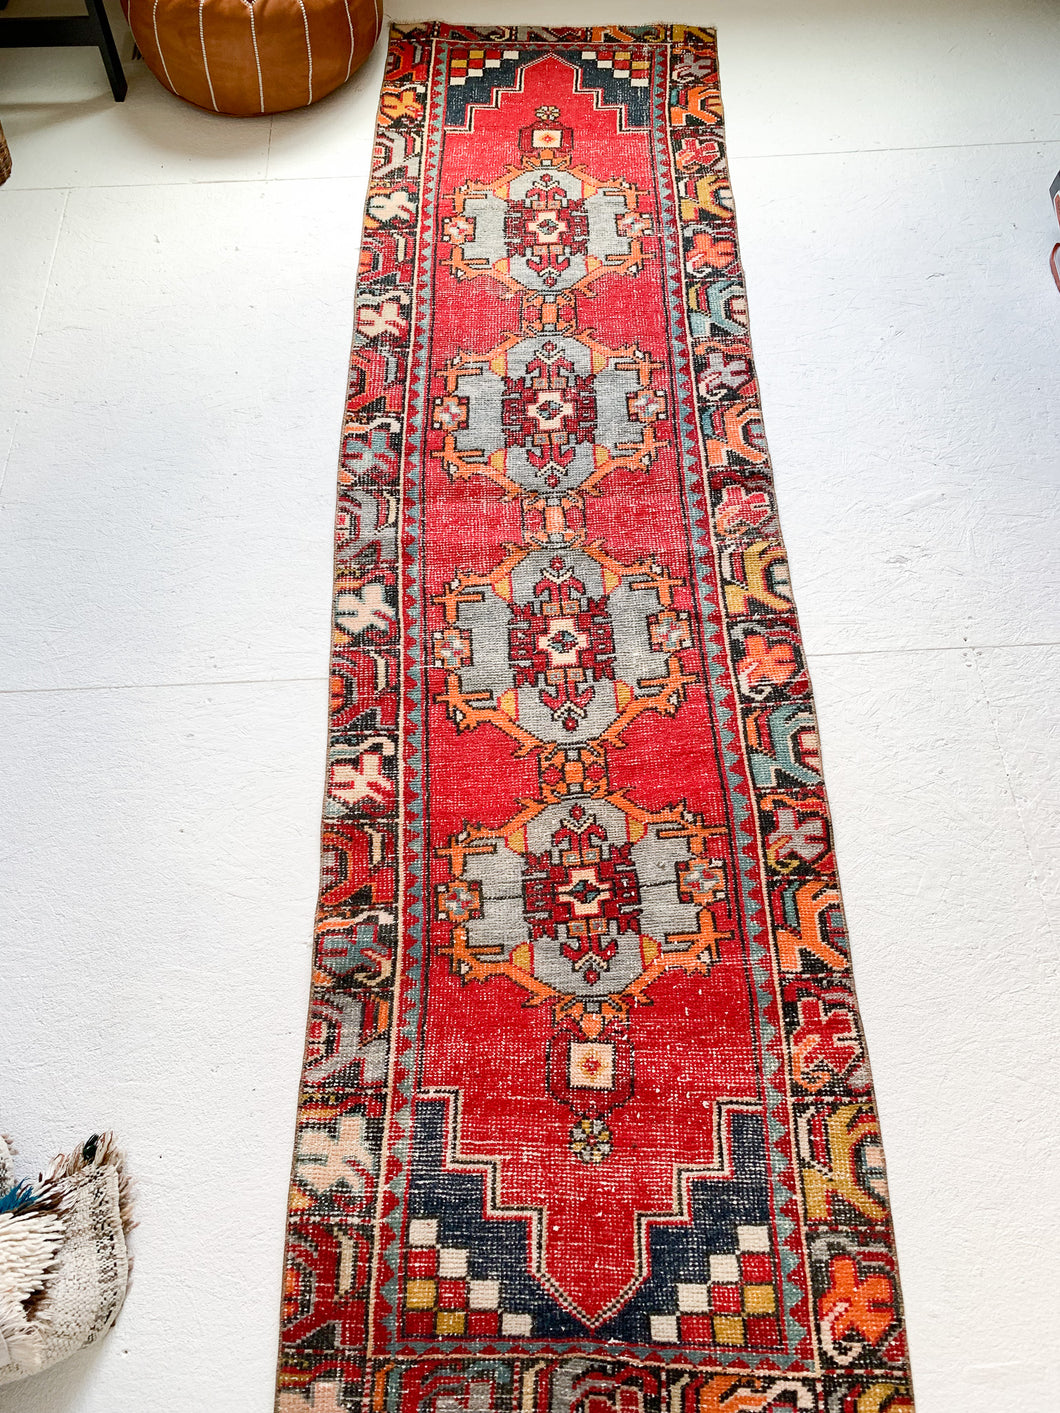 No. R1025 - 2.5' x 9' Vintage Turkish Runner Rug